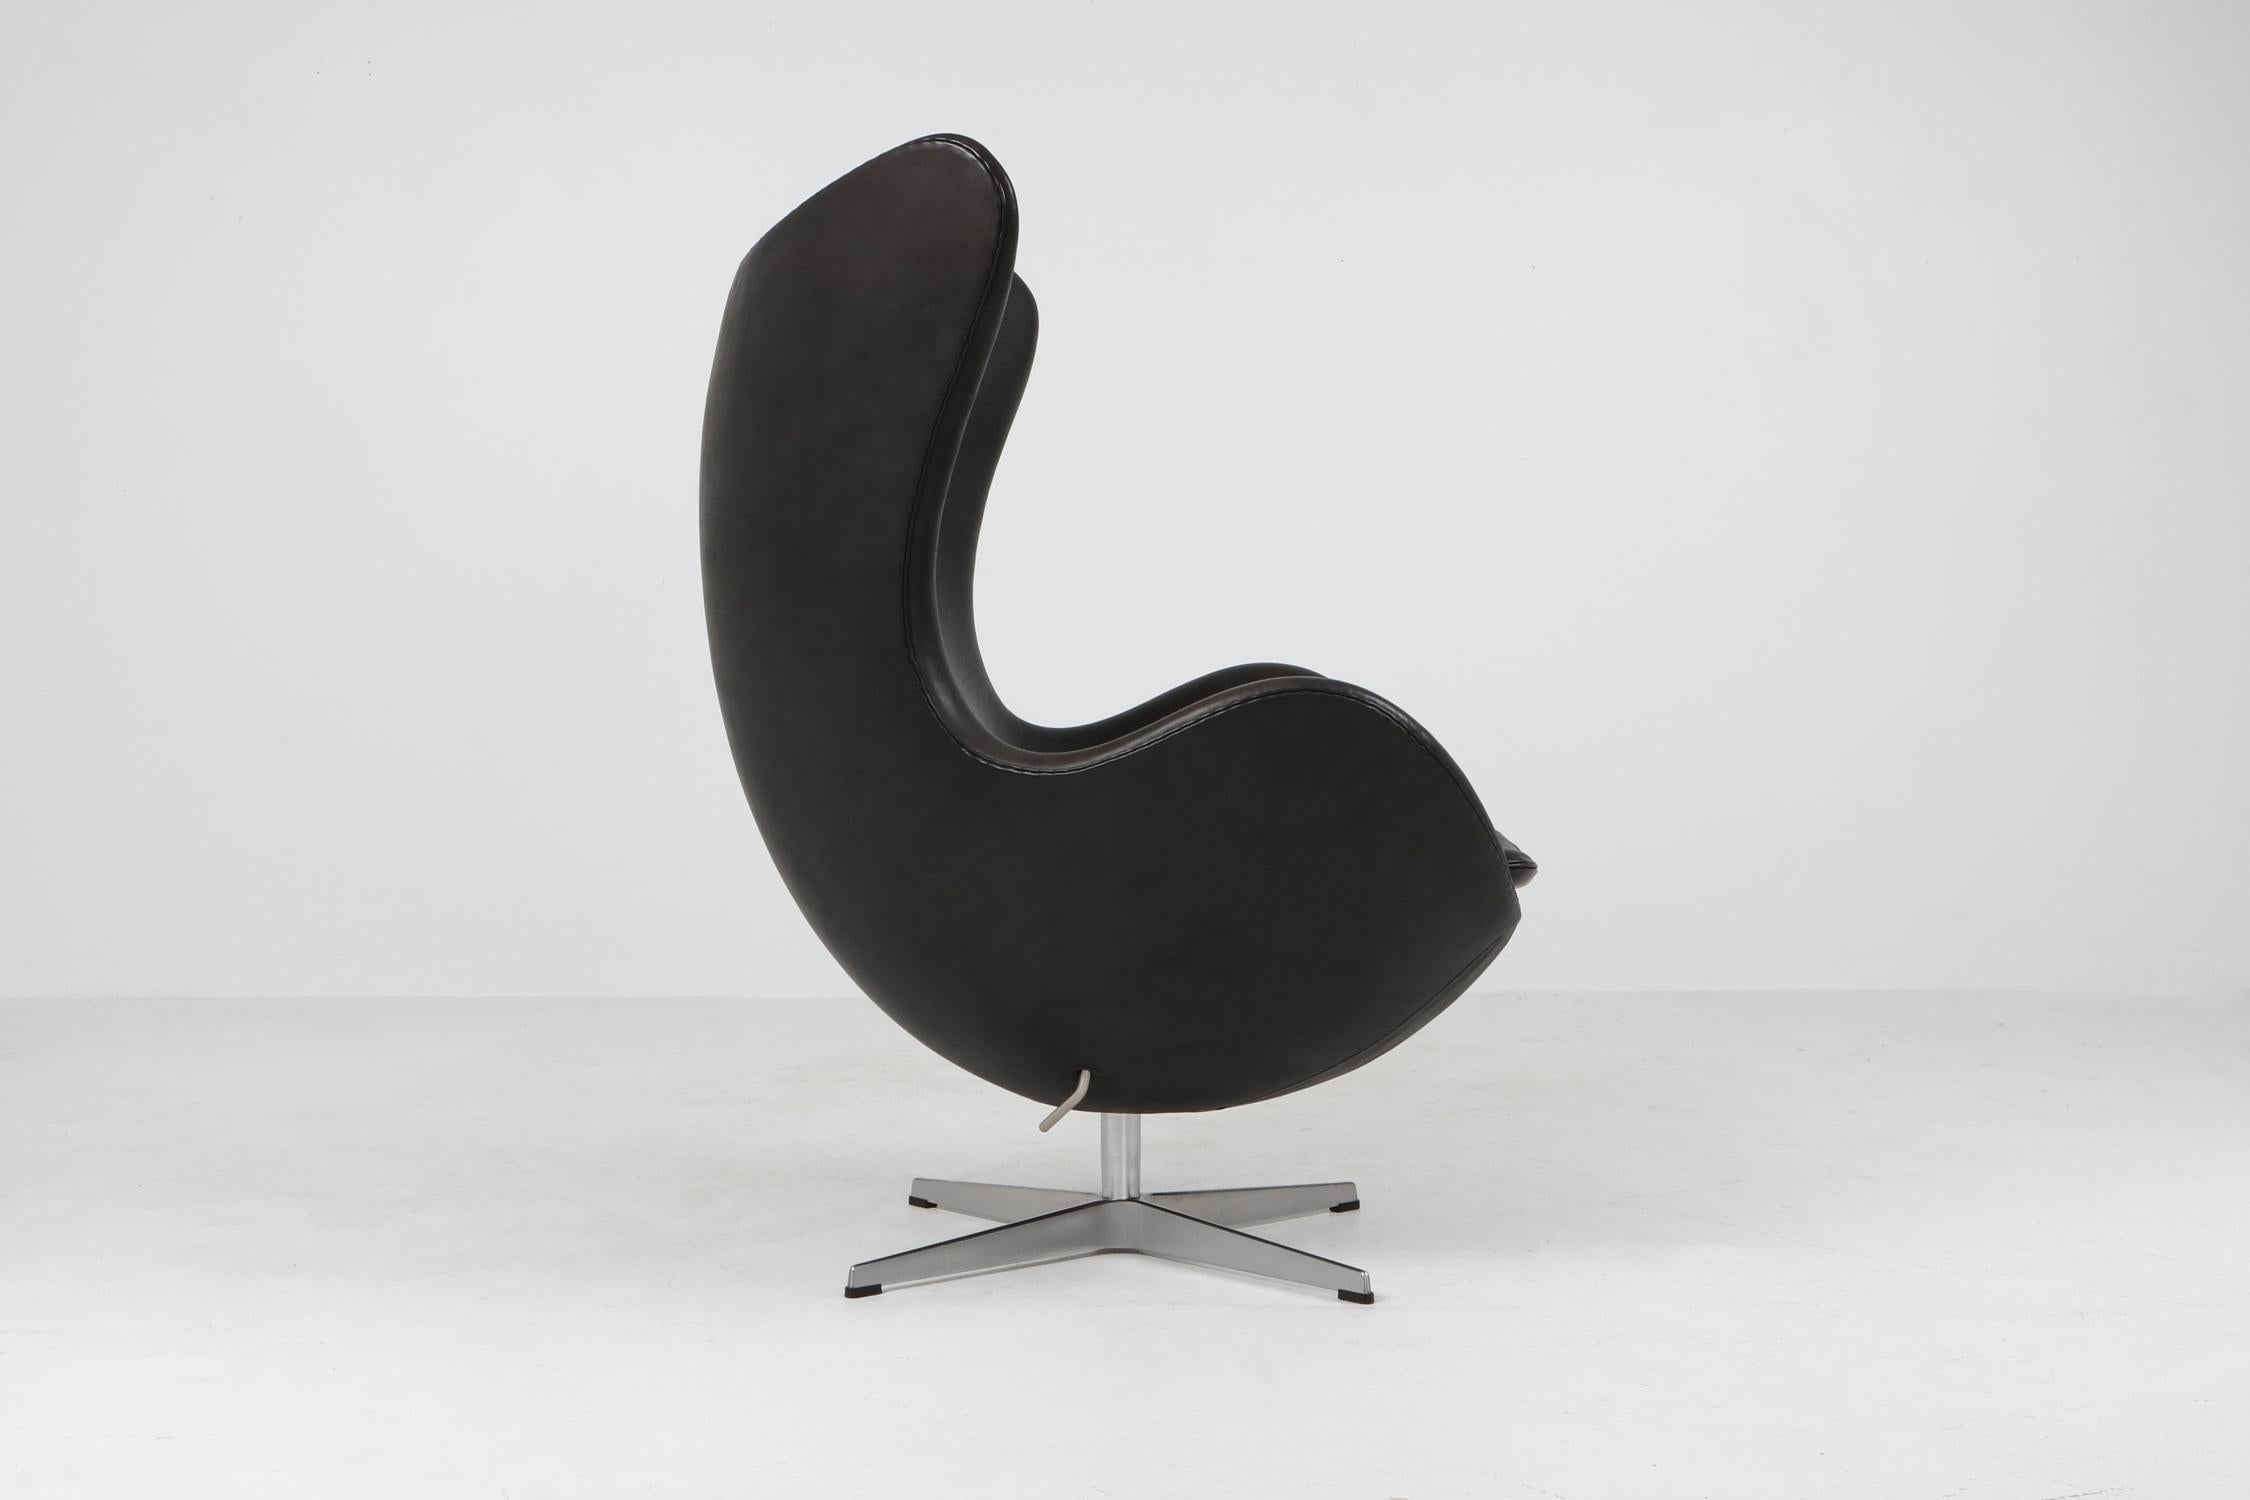 European Black Leather Egg Chair by Arne Jacobsen for Fritz Hansen